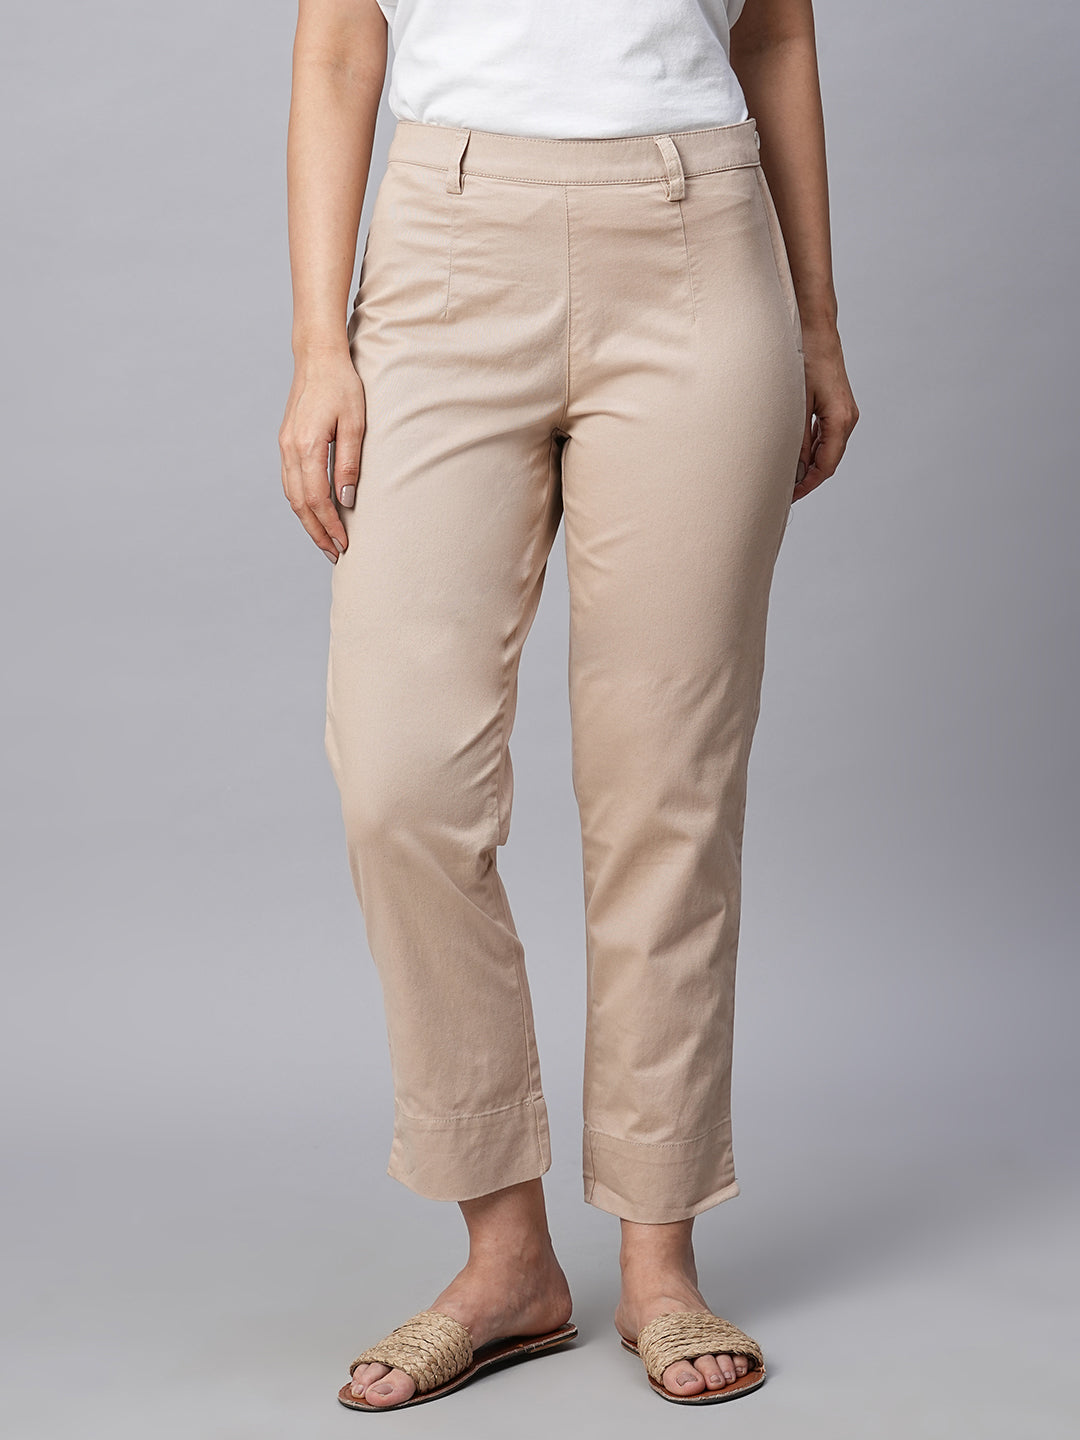 Buy Beige Trousers  Pants for Women by Oxxo Online  Ajiocom